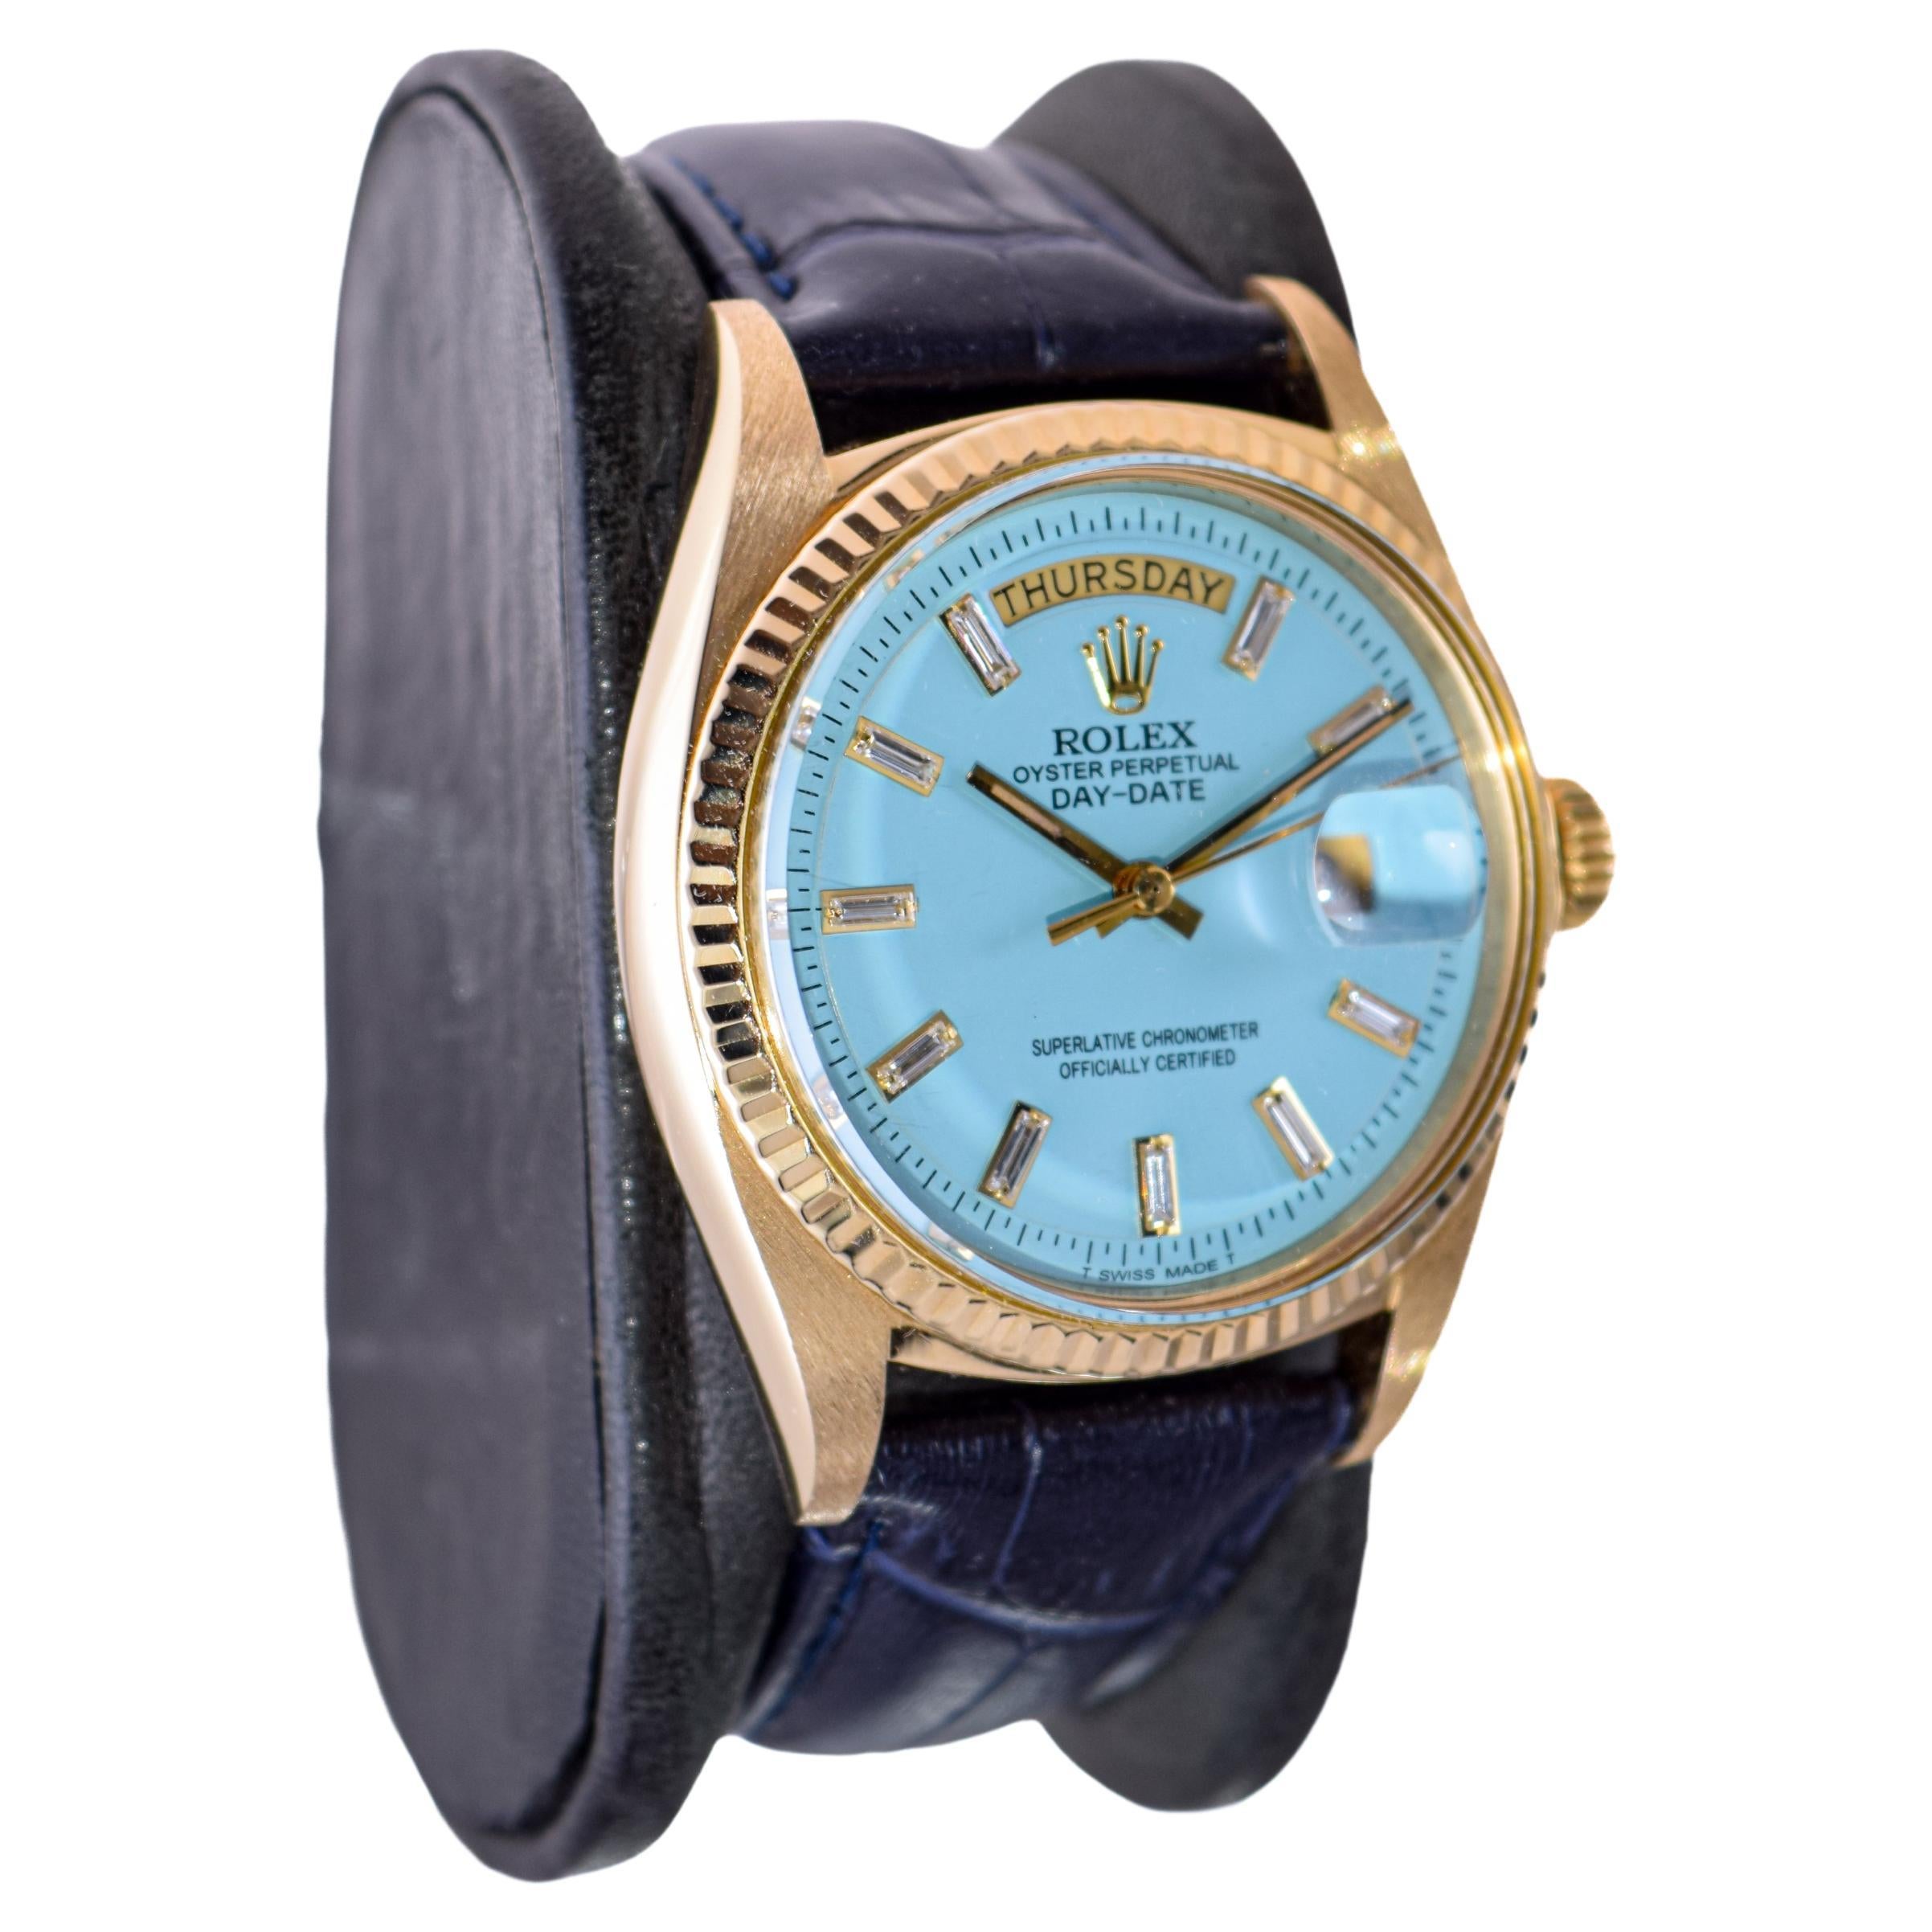 FABRIK / HAUS: Rolex Watch Company
STIL / REFERENZ: Präsident / Referenz 1803
METALL / MATERIAL: 18Kt. Massiv-Gelbgold 
CIRCA / JAHR: 1970
ABMESSUNGEN / GRÖSSE:  Länge 44mm X Durchmesser 36mm
UHRWERK / KALIBER: Ewiger Aufzug / 26 Jewels / Kaliber